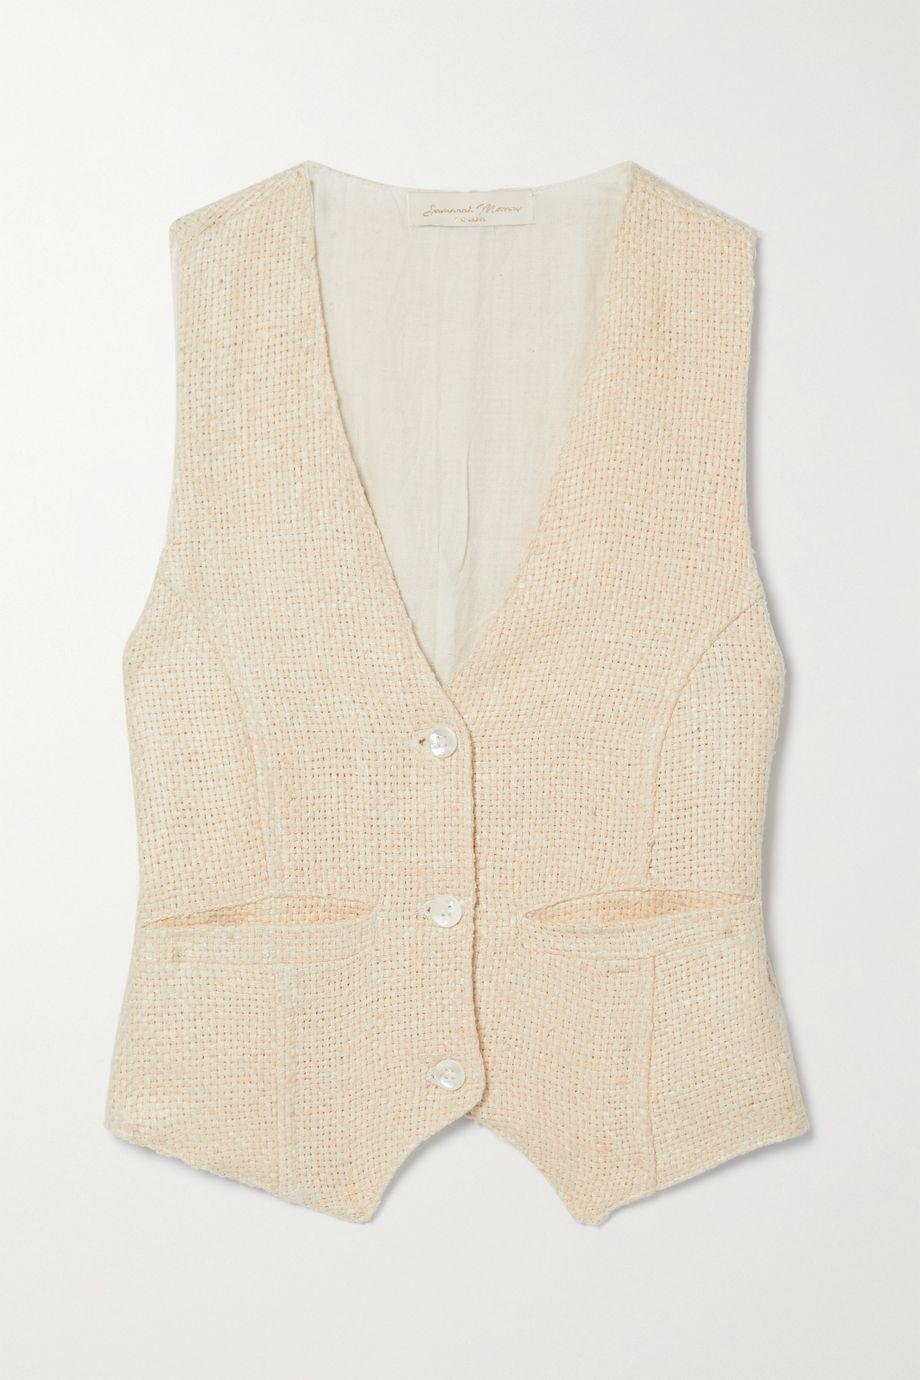 + NET SUSTAIN woven peace silk vest by SAVANNAH MORROW